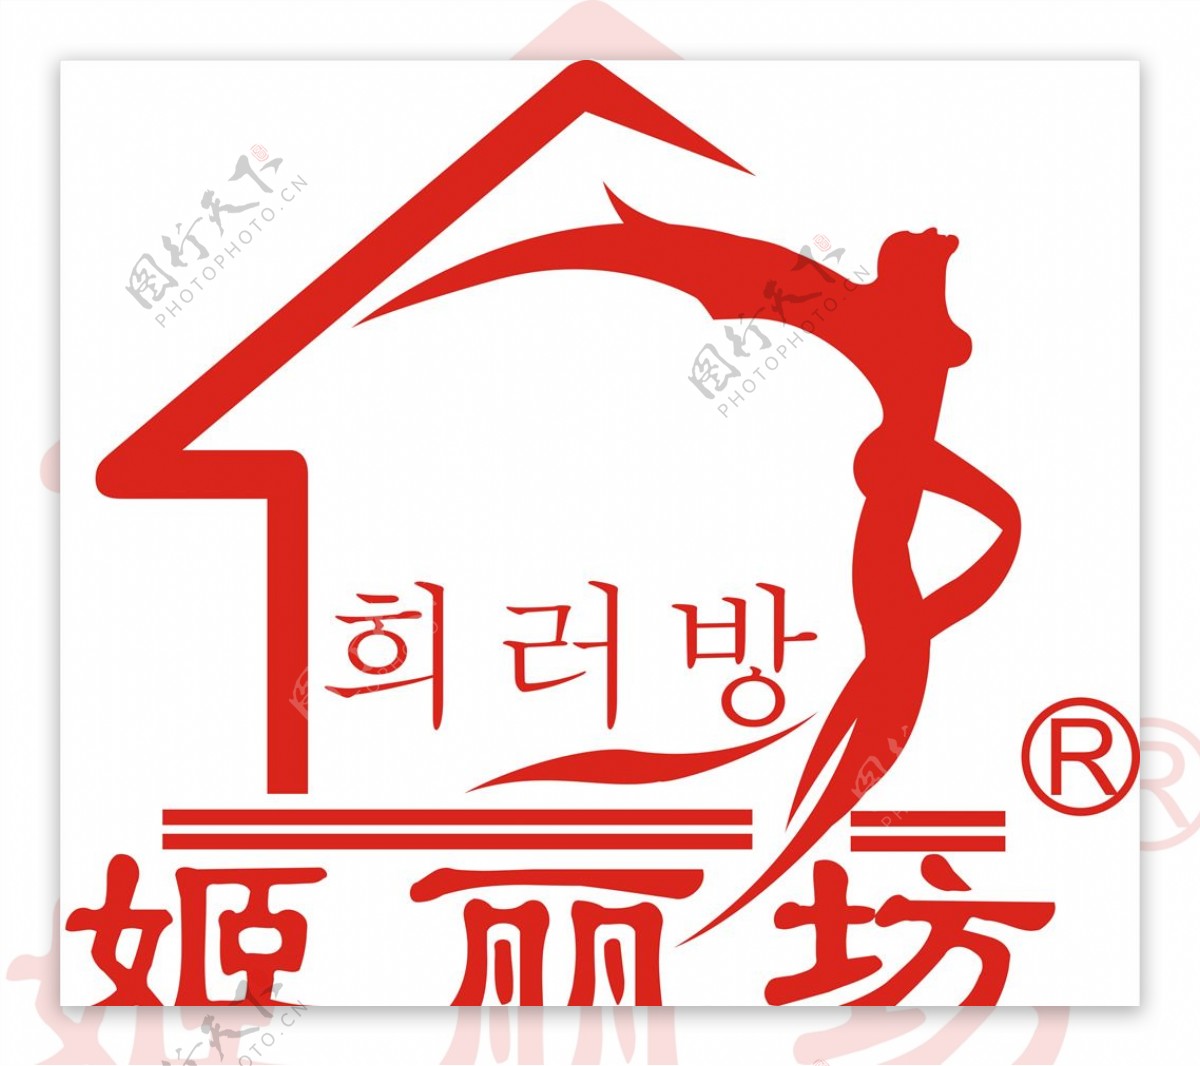 姬丽坊logo